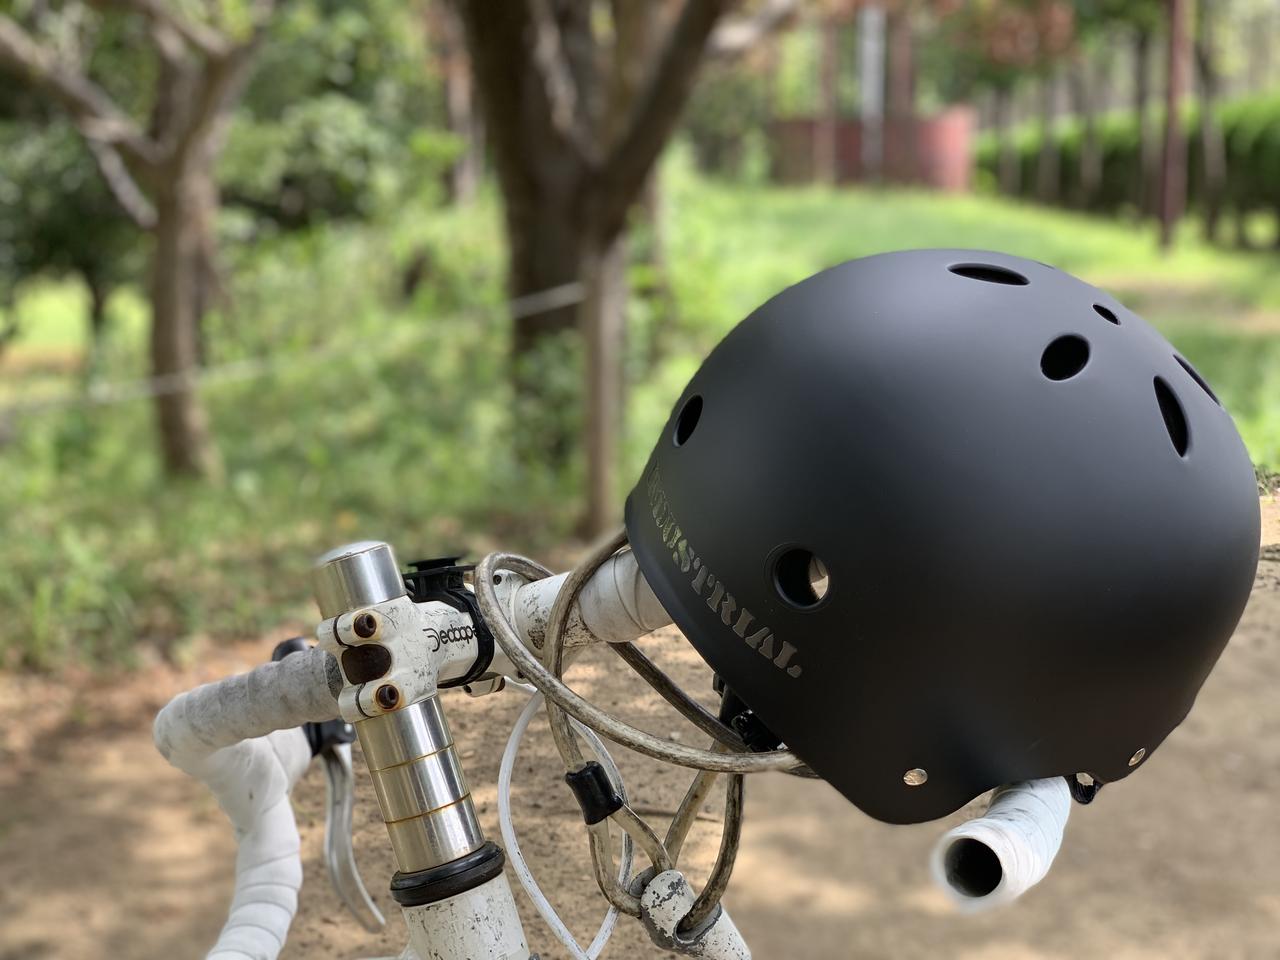 自転車のヘルメット着用が「努力義務」に！おしゃれと安全を両立させる